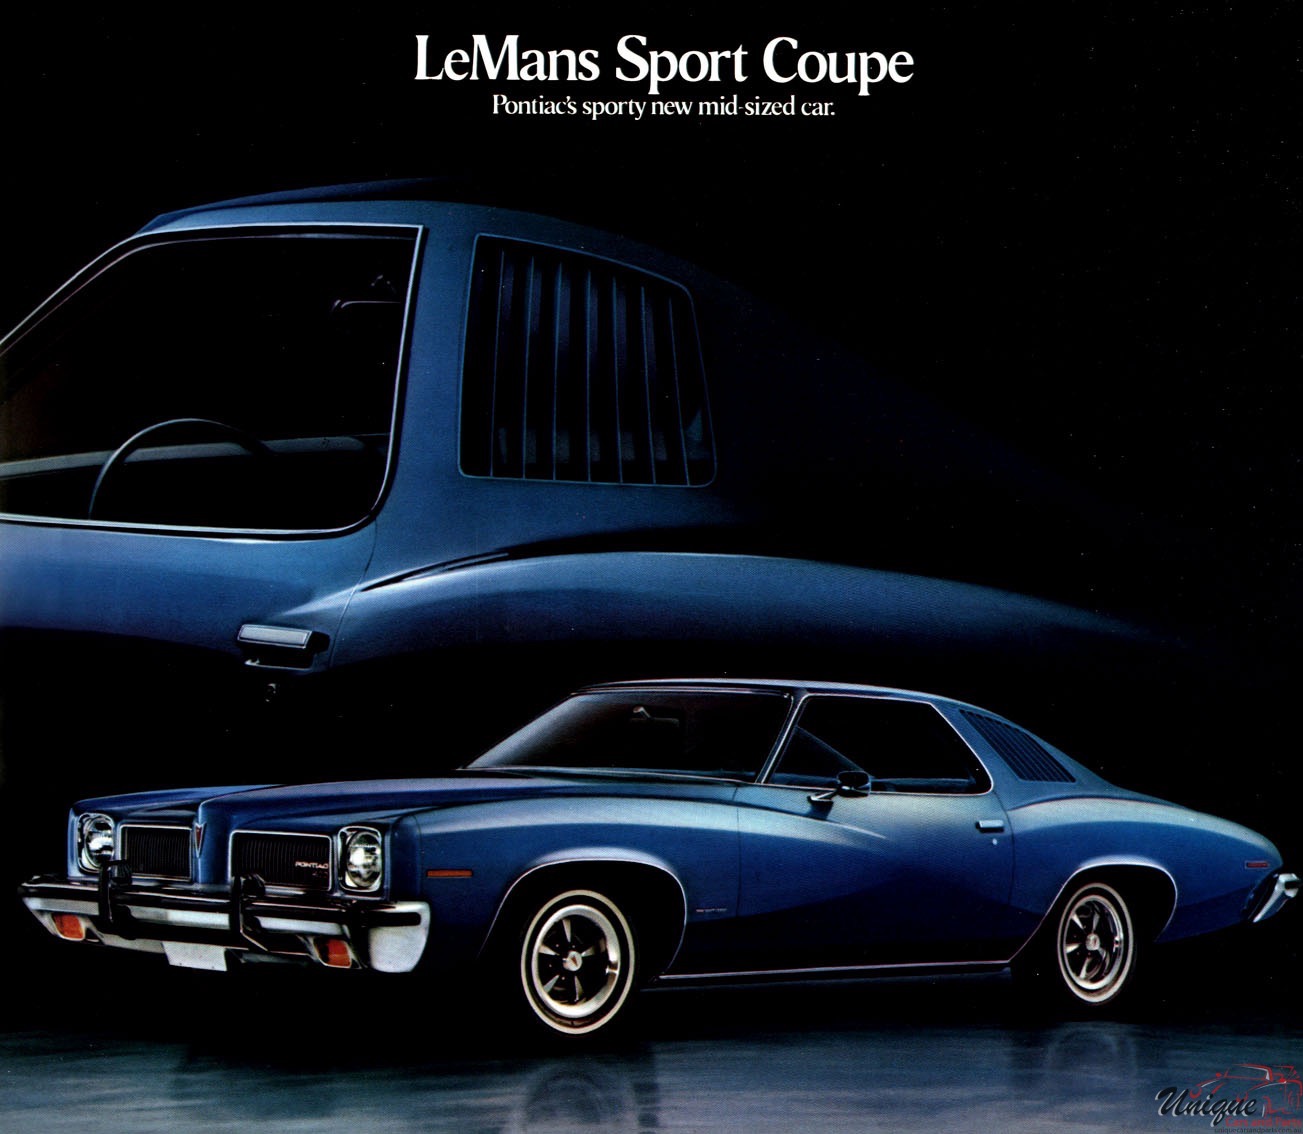 1973 Pontiac LeMans Sport Coupe Brochure